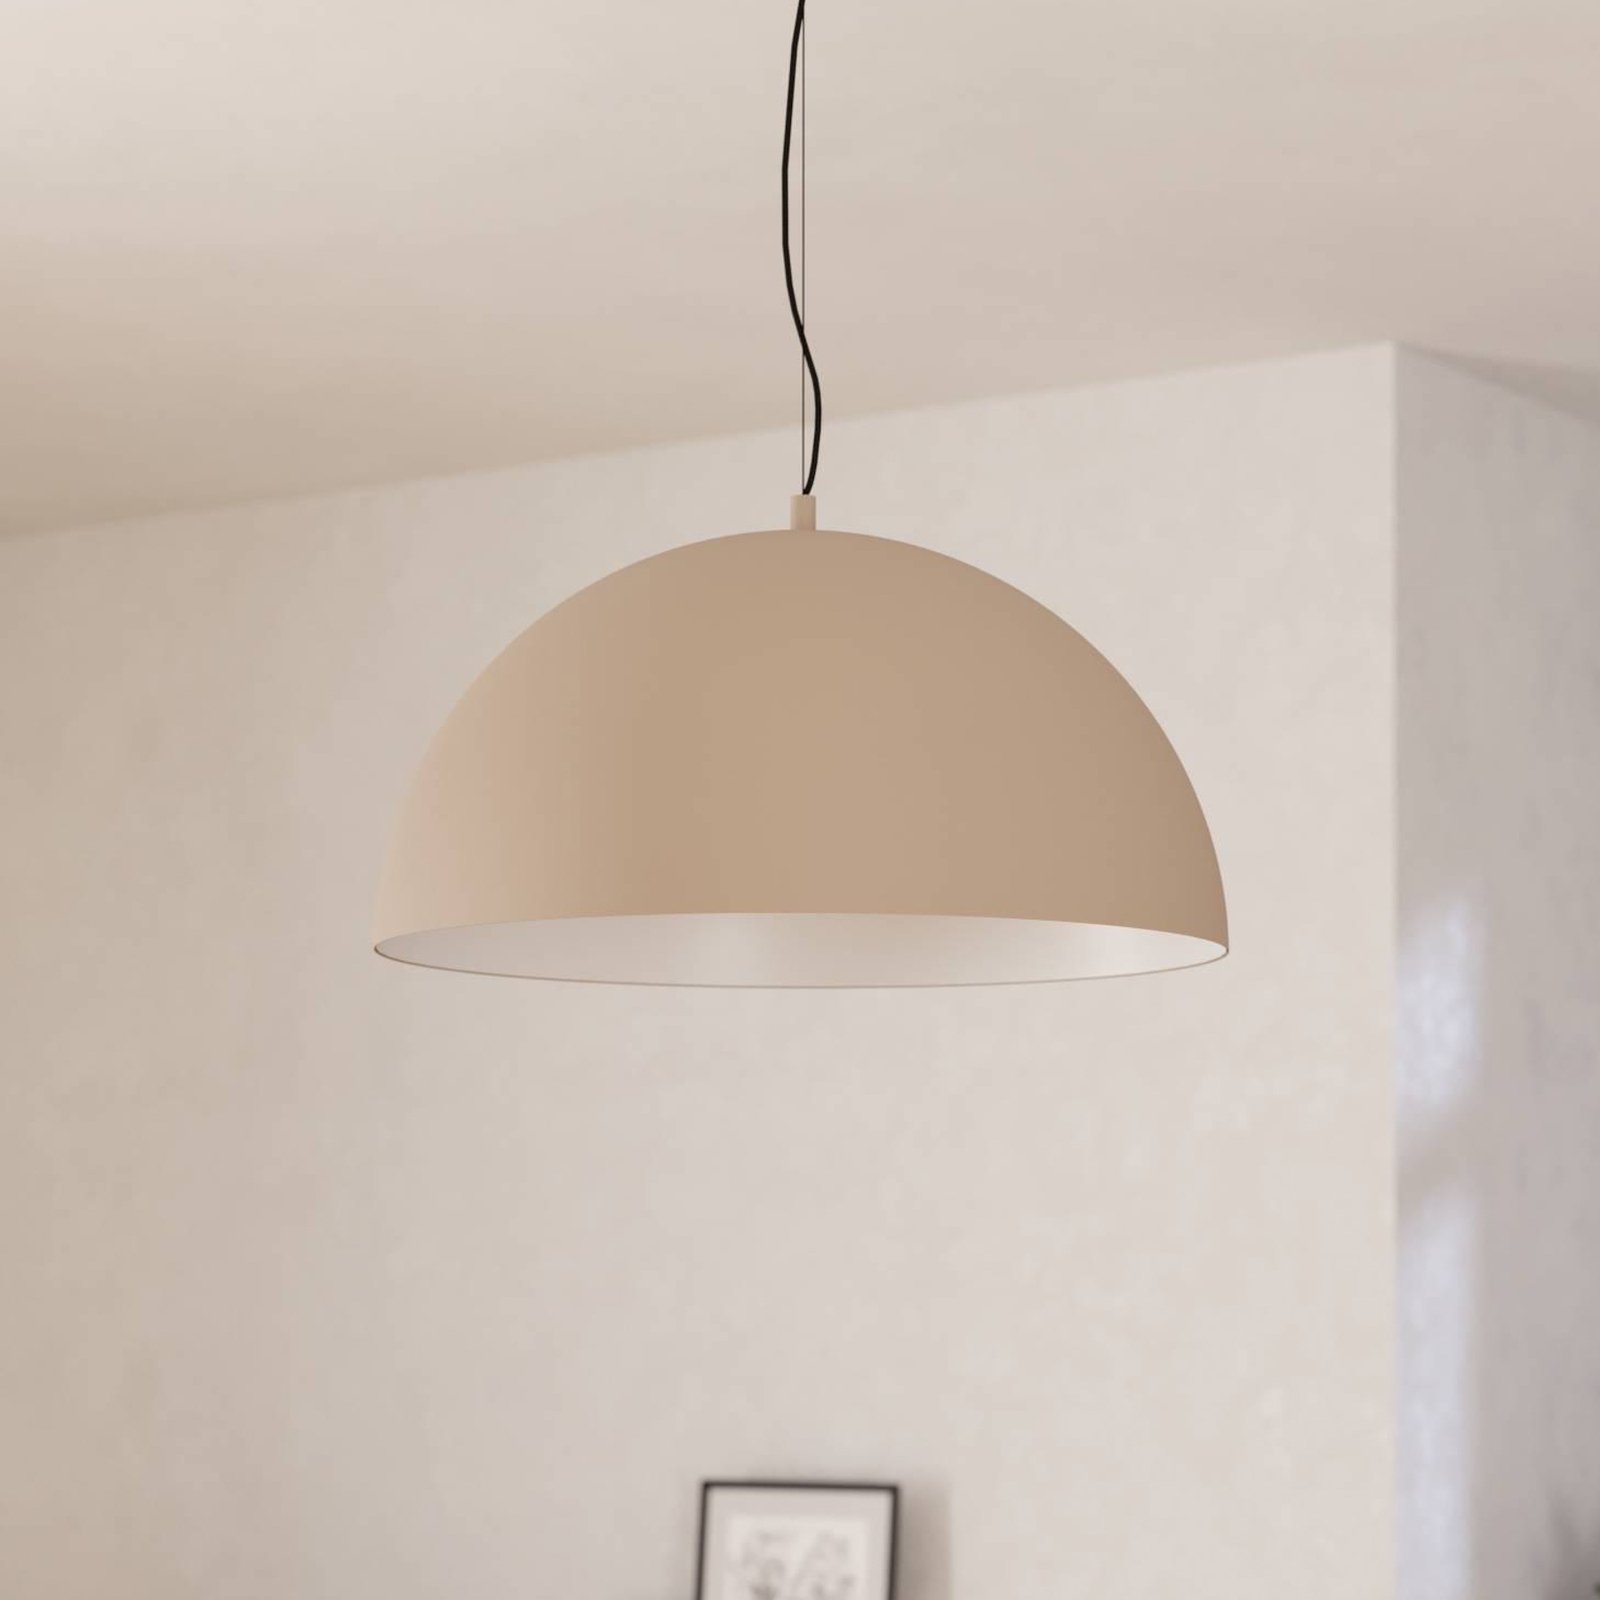 Gaetano 1 hængelampe, Ø 53 cm, sand/creme, stål